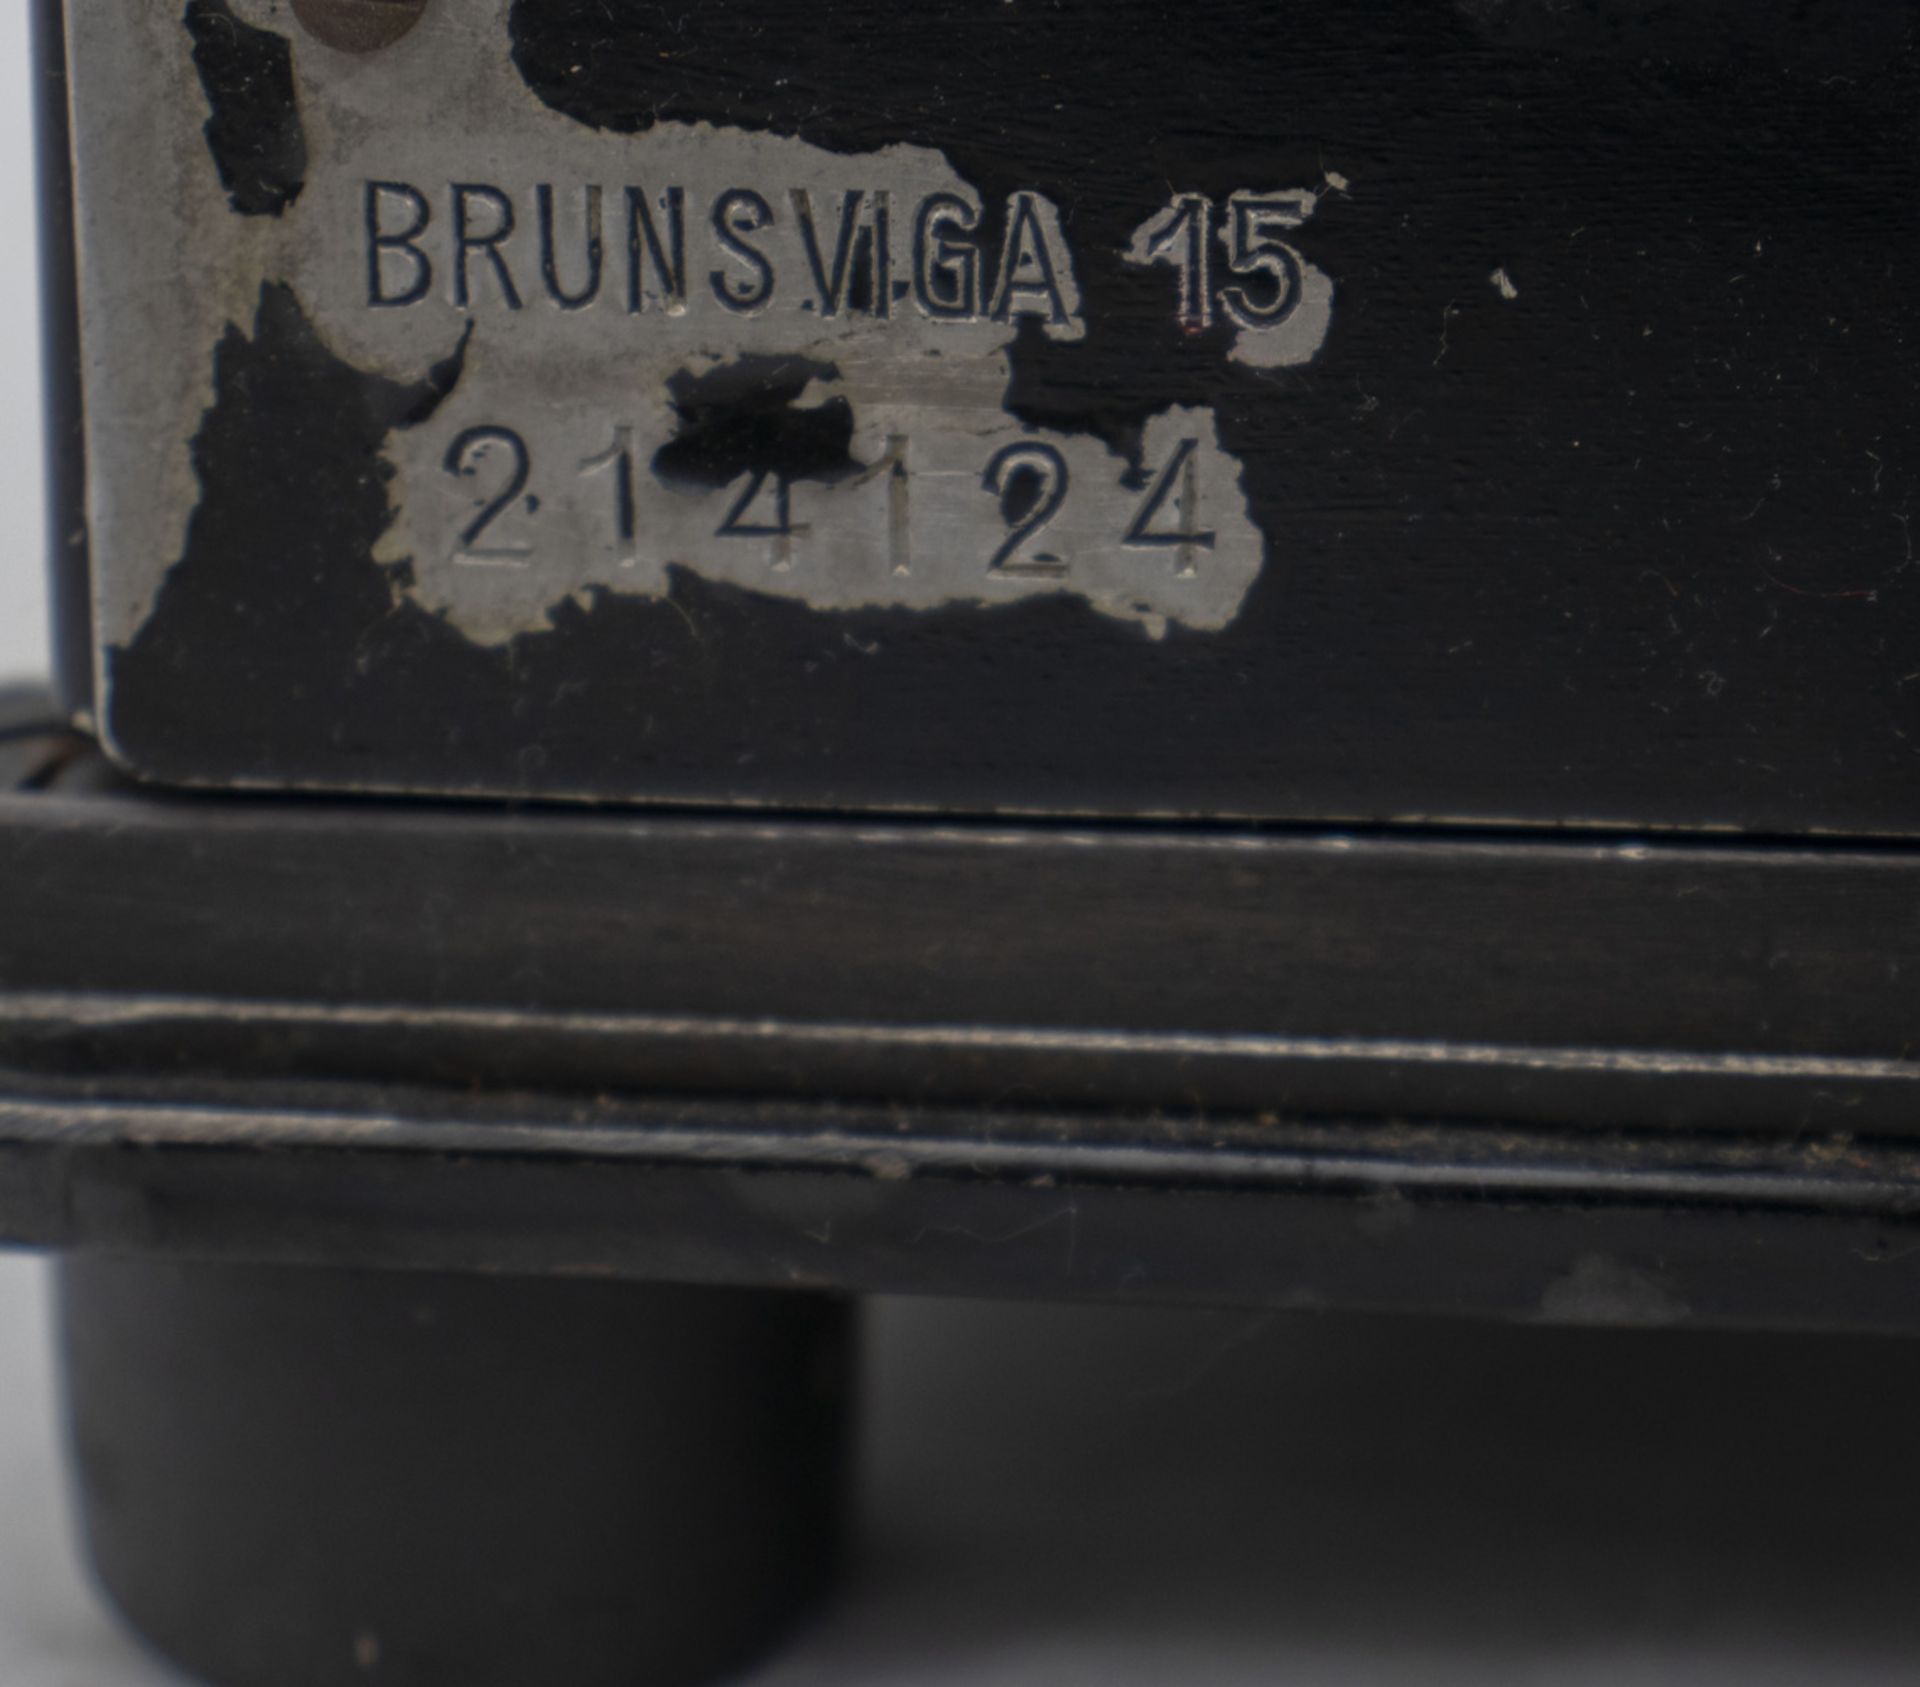 Rechenmaschine / An adding machine, Brunsviga Maschinenwerke, 1942 - Bild 3 aus 10